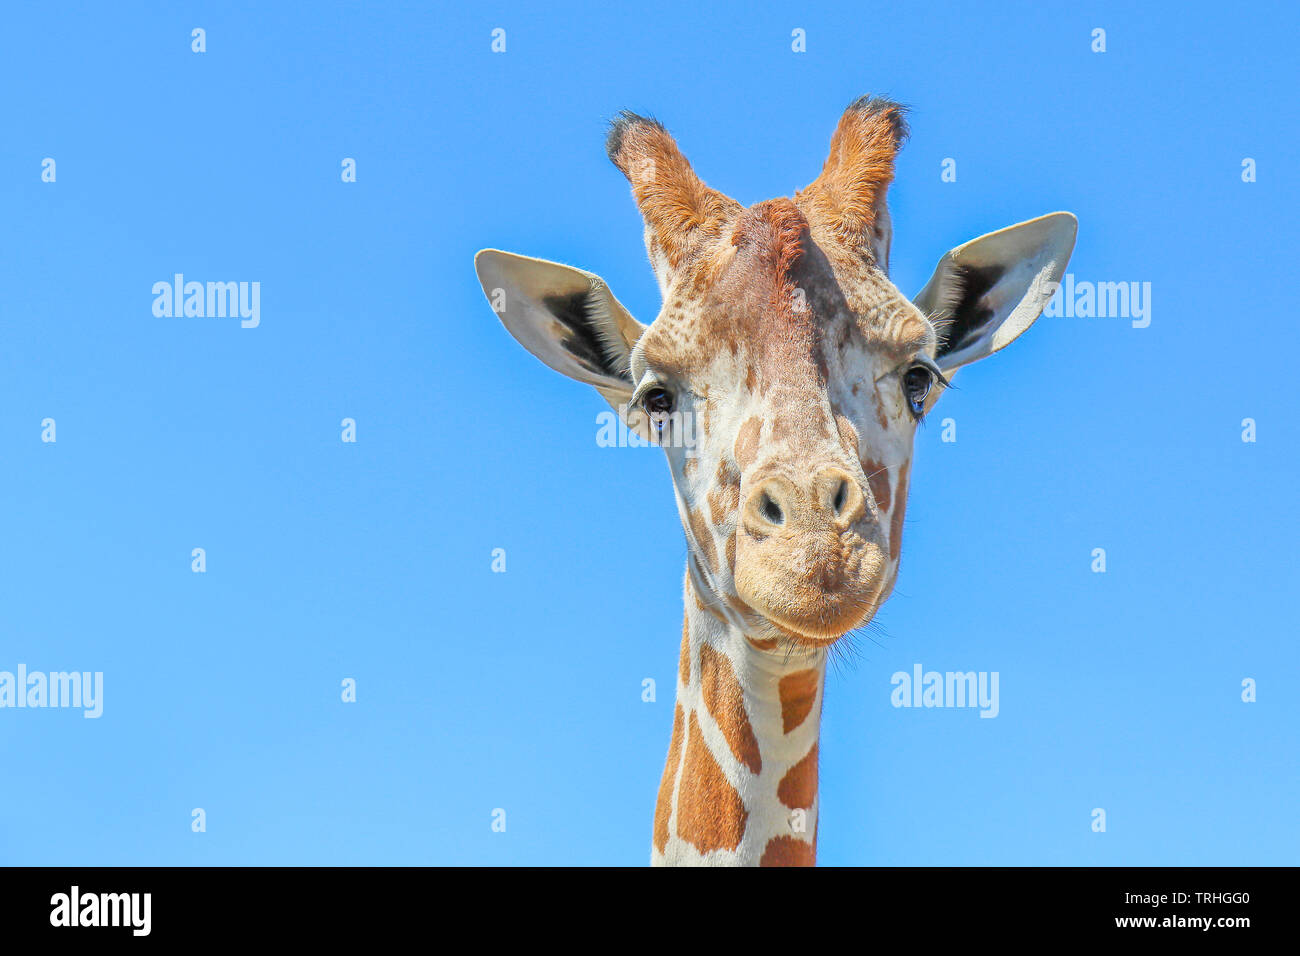 Jirafa reticulada (Giraffa camelopardalis reticulata) contra un cielo azul claro. Foto de stock